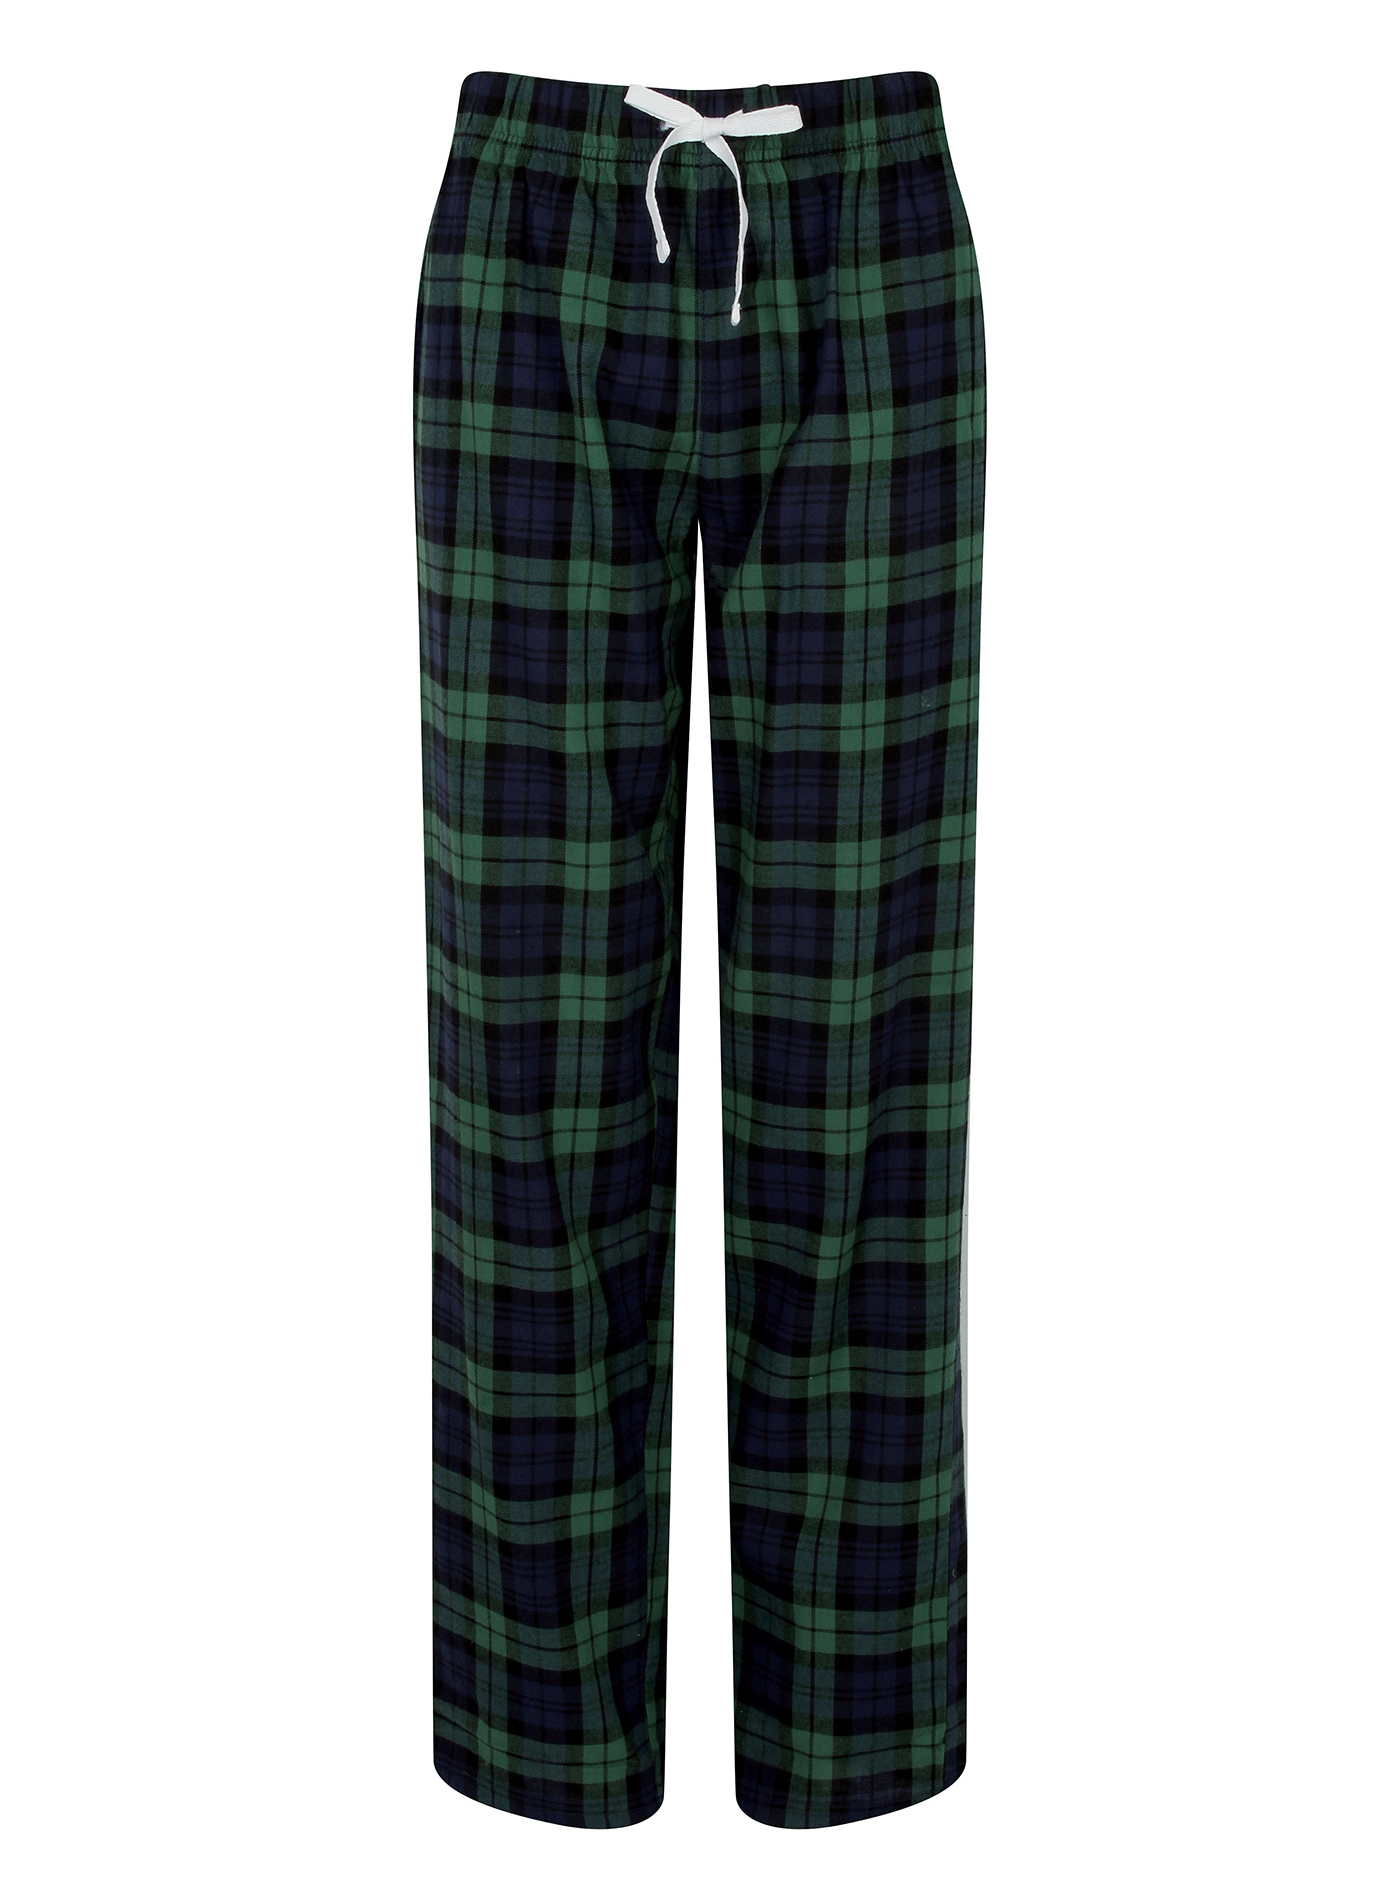 Dámské kalhoty na spaní Tartan - Zelená a modrá XS